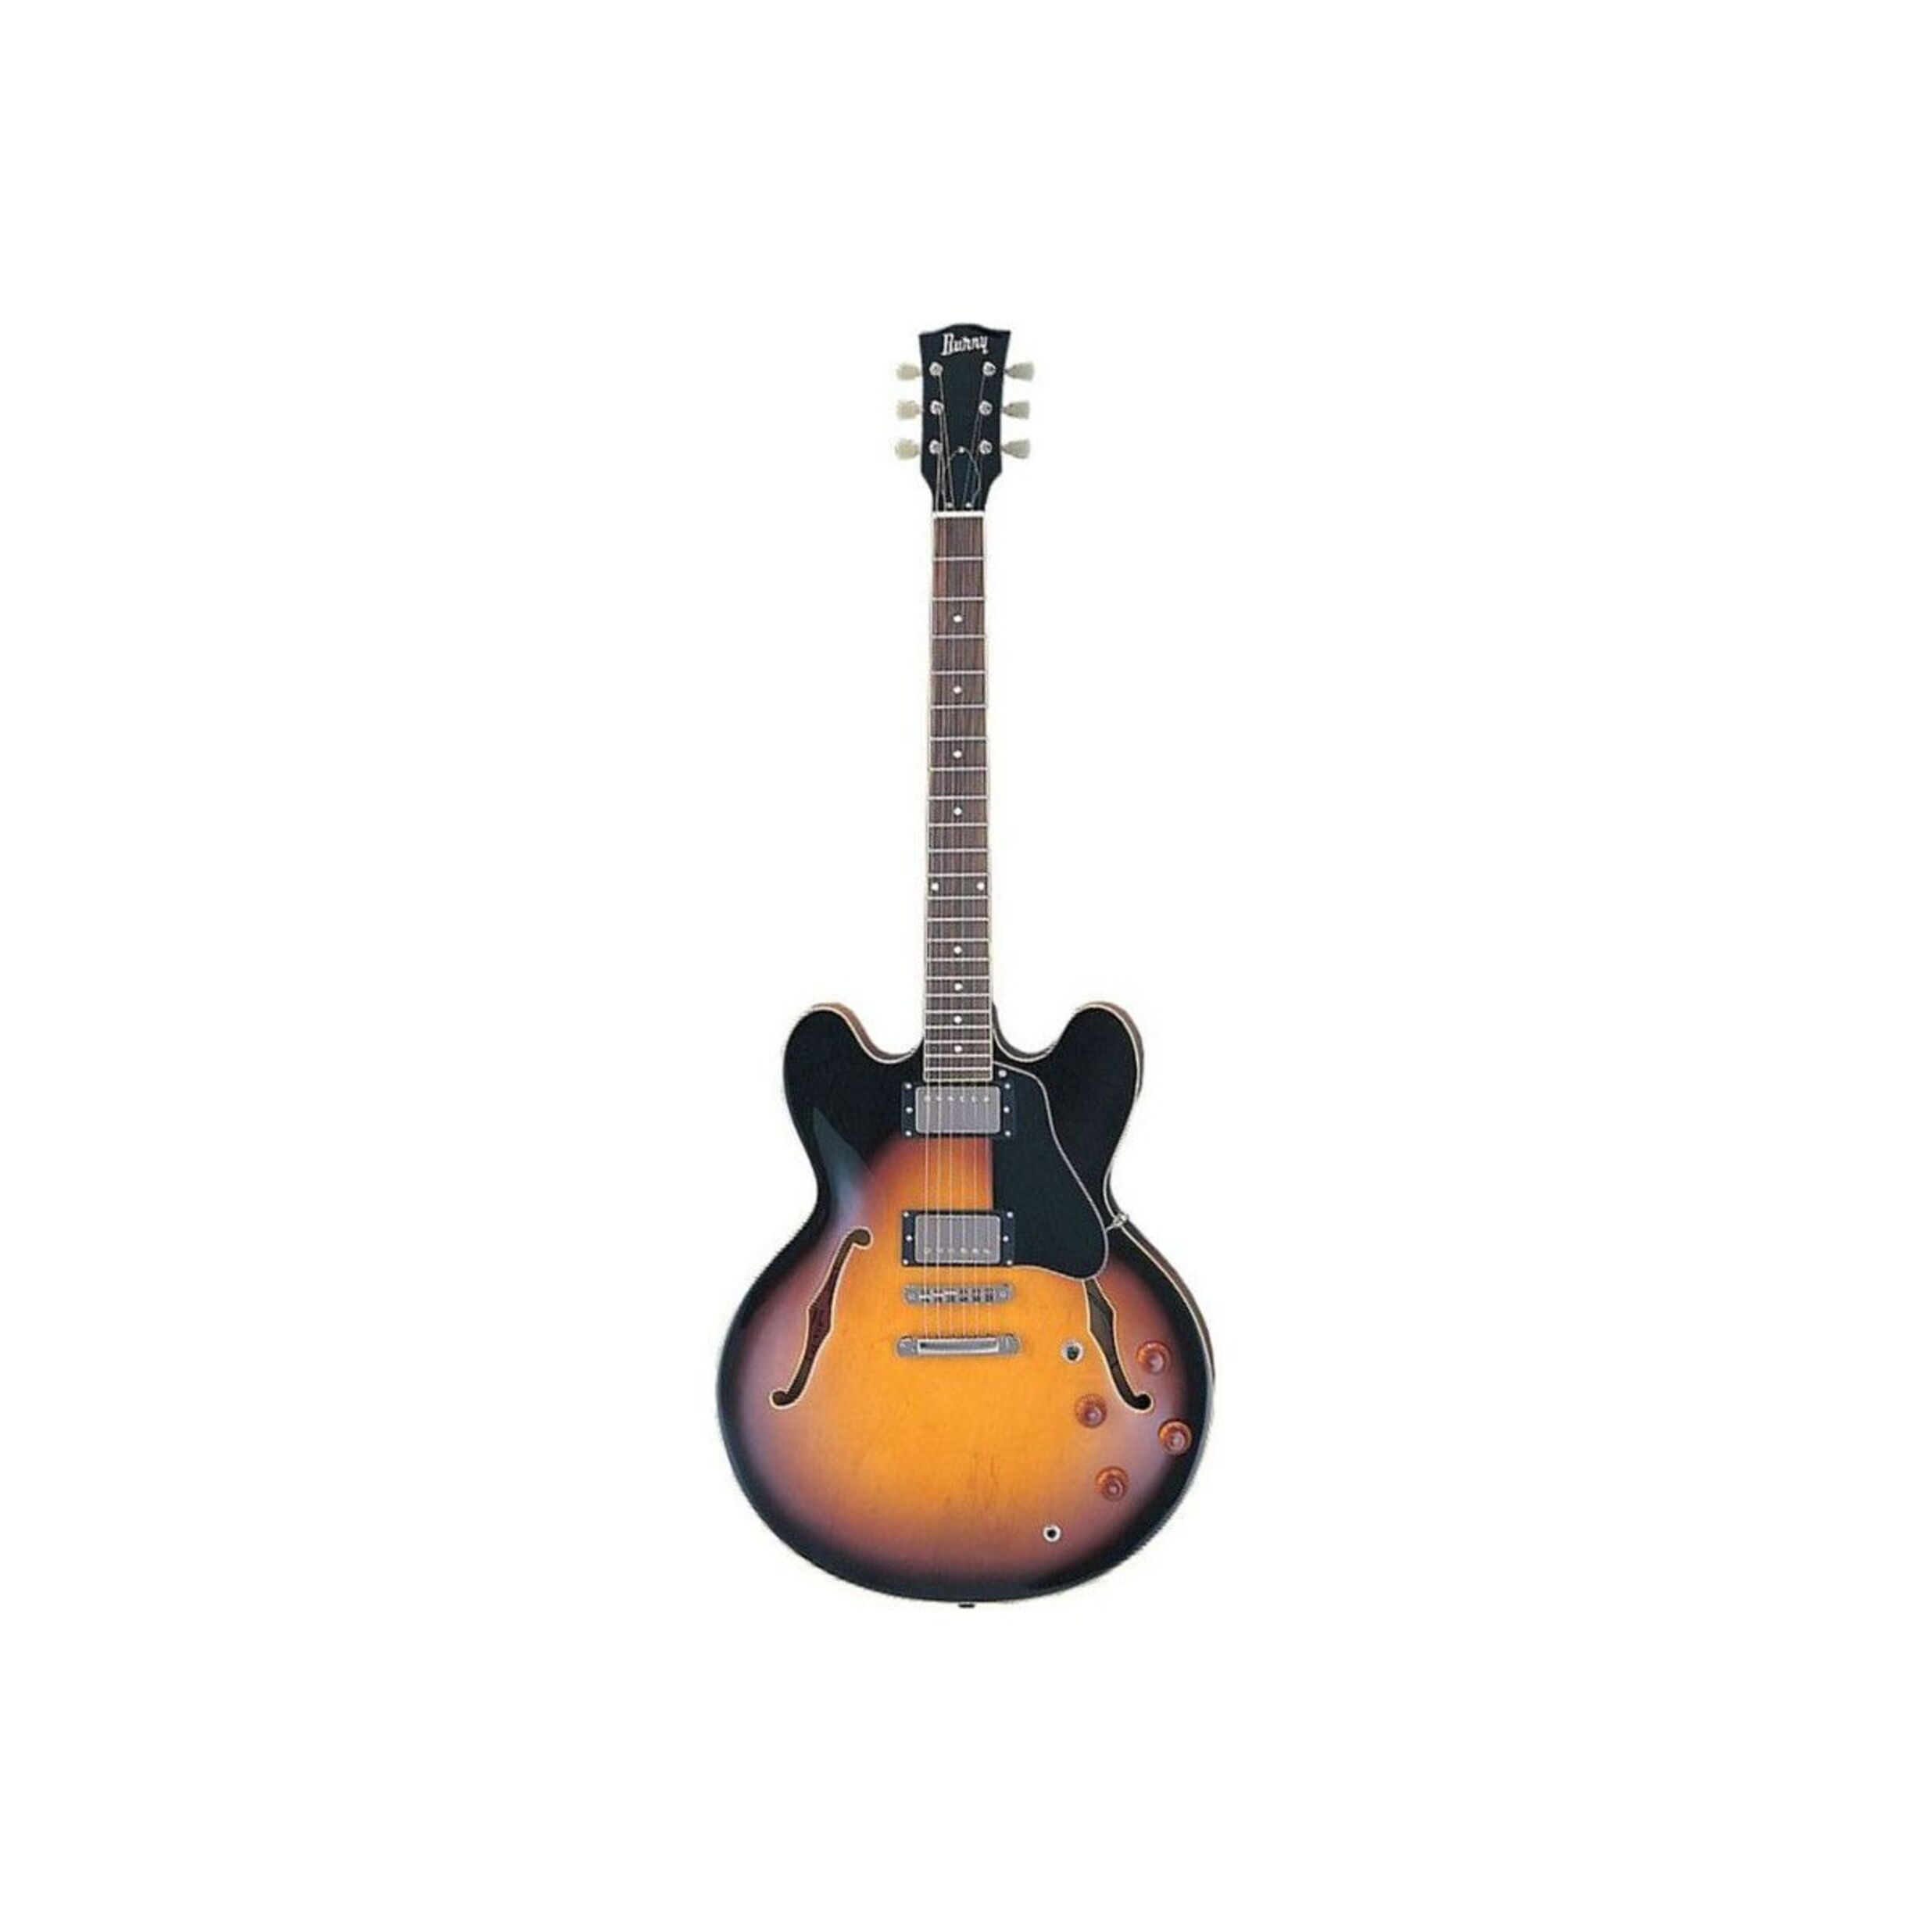 Полуакустические гитары Burny RSA70 BS (кейс в комплекте) полуакустические гитары burny rsa70 bs кейс в комплекте